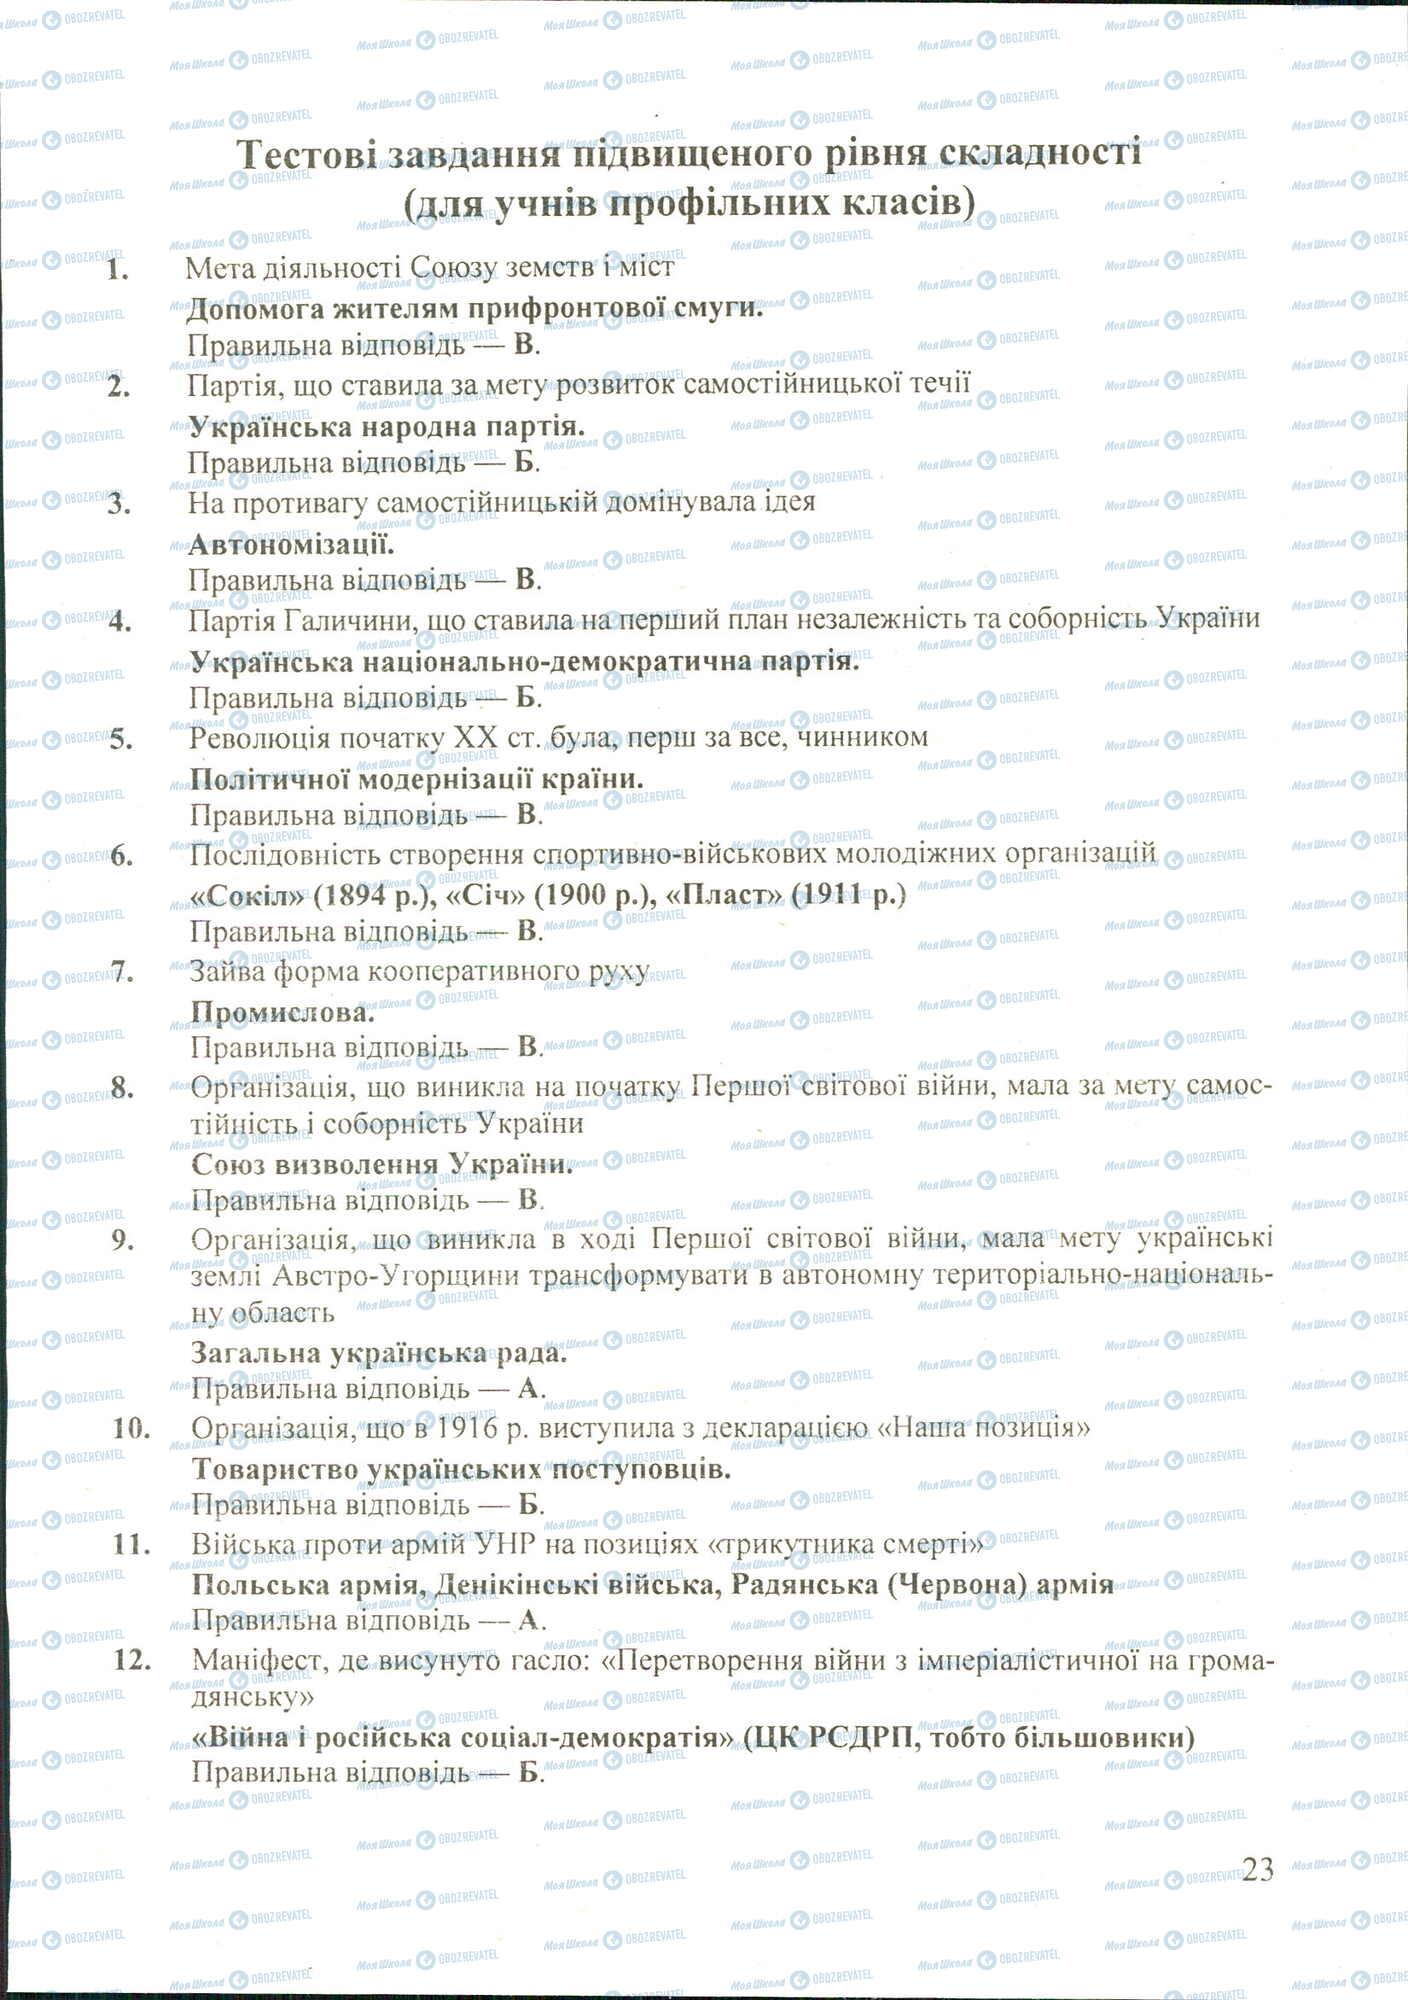 ДПА История Украины 11 класс страница image0000027A